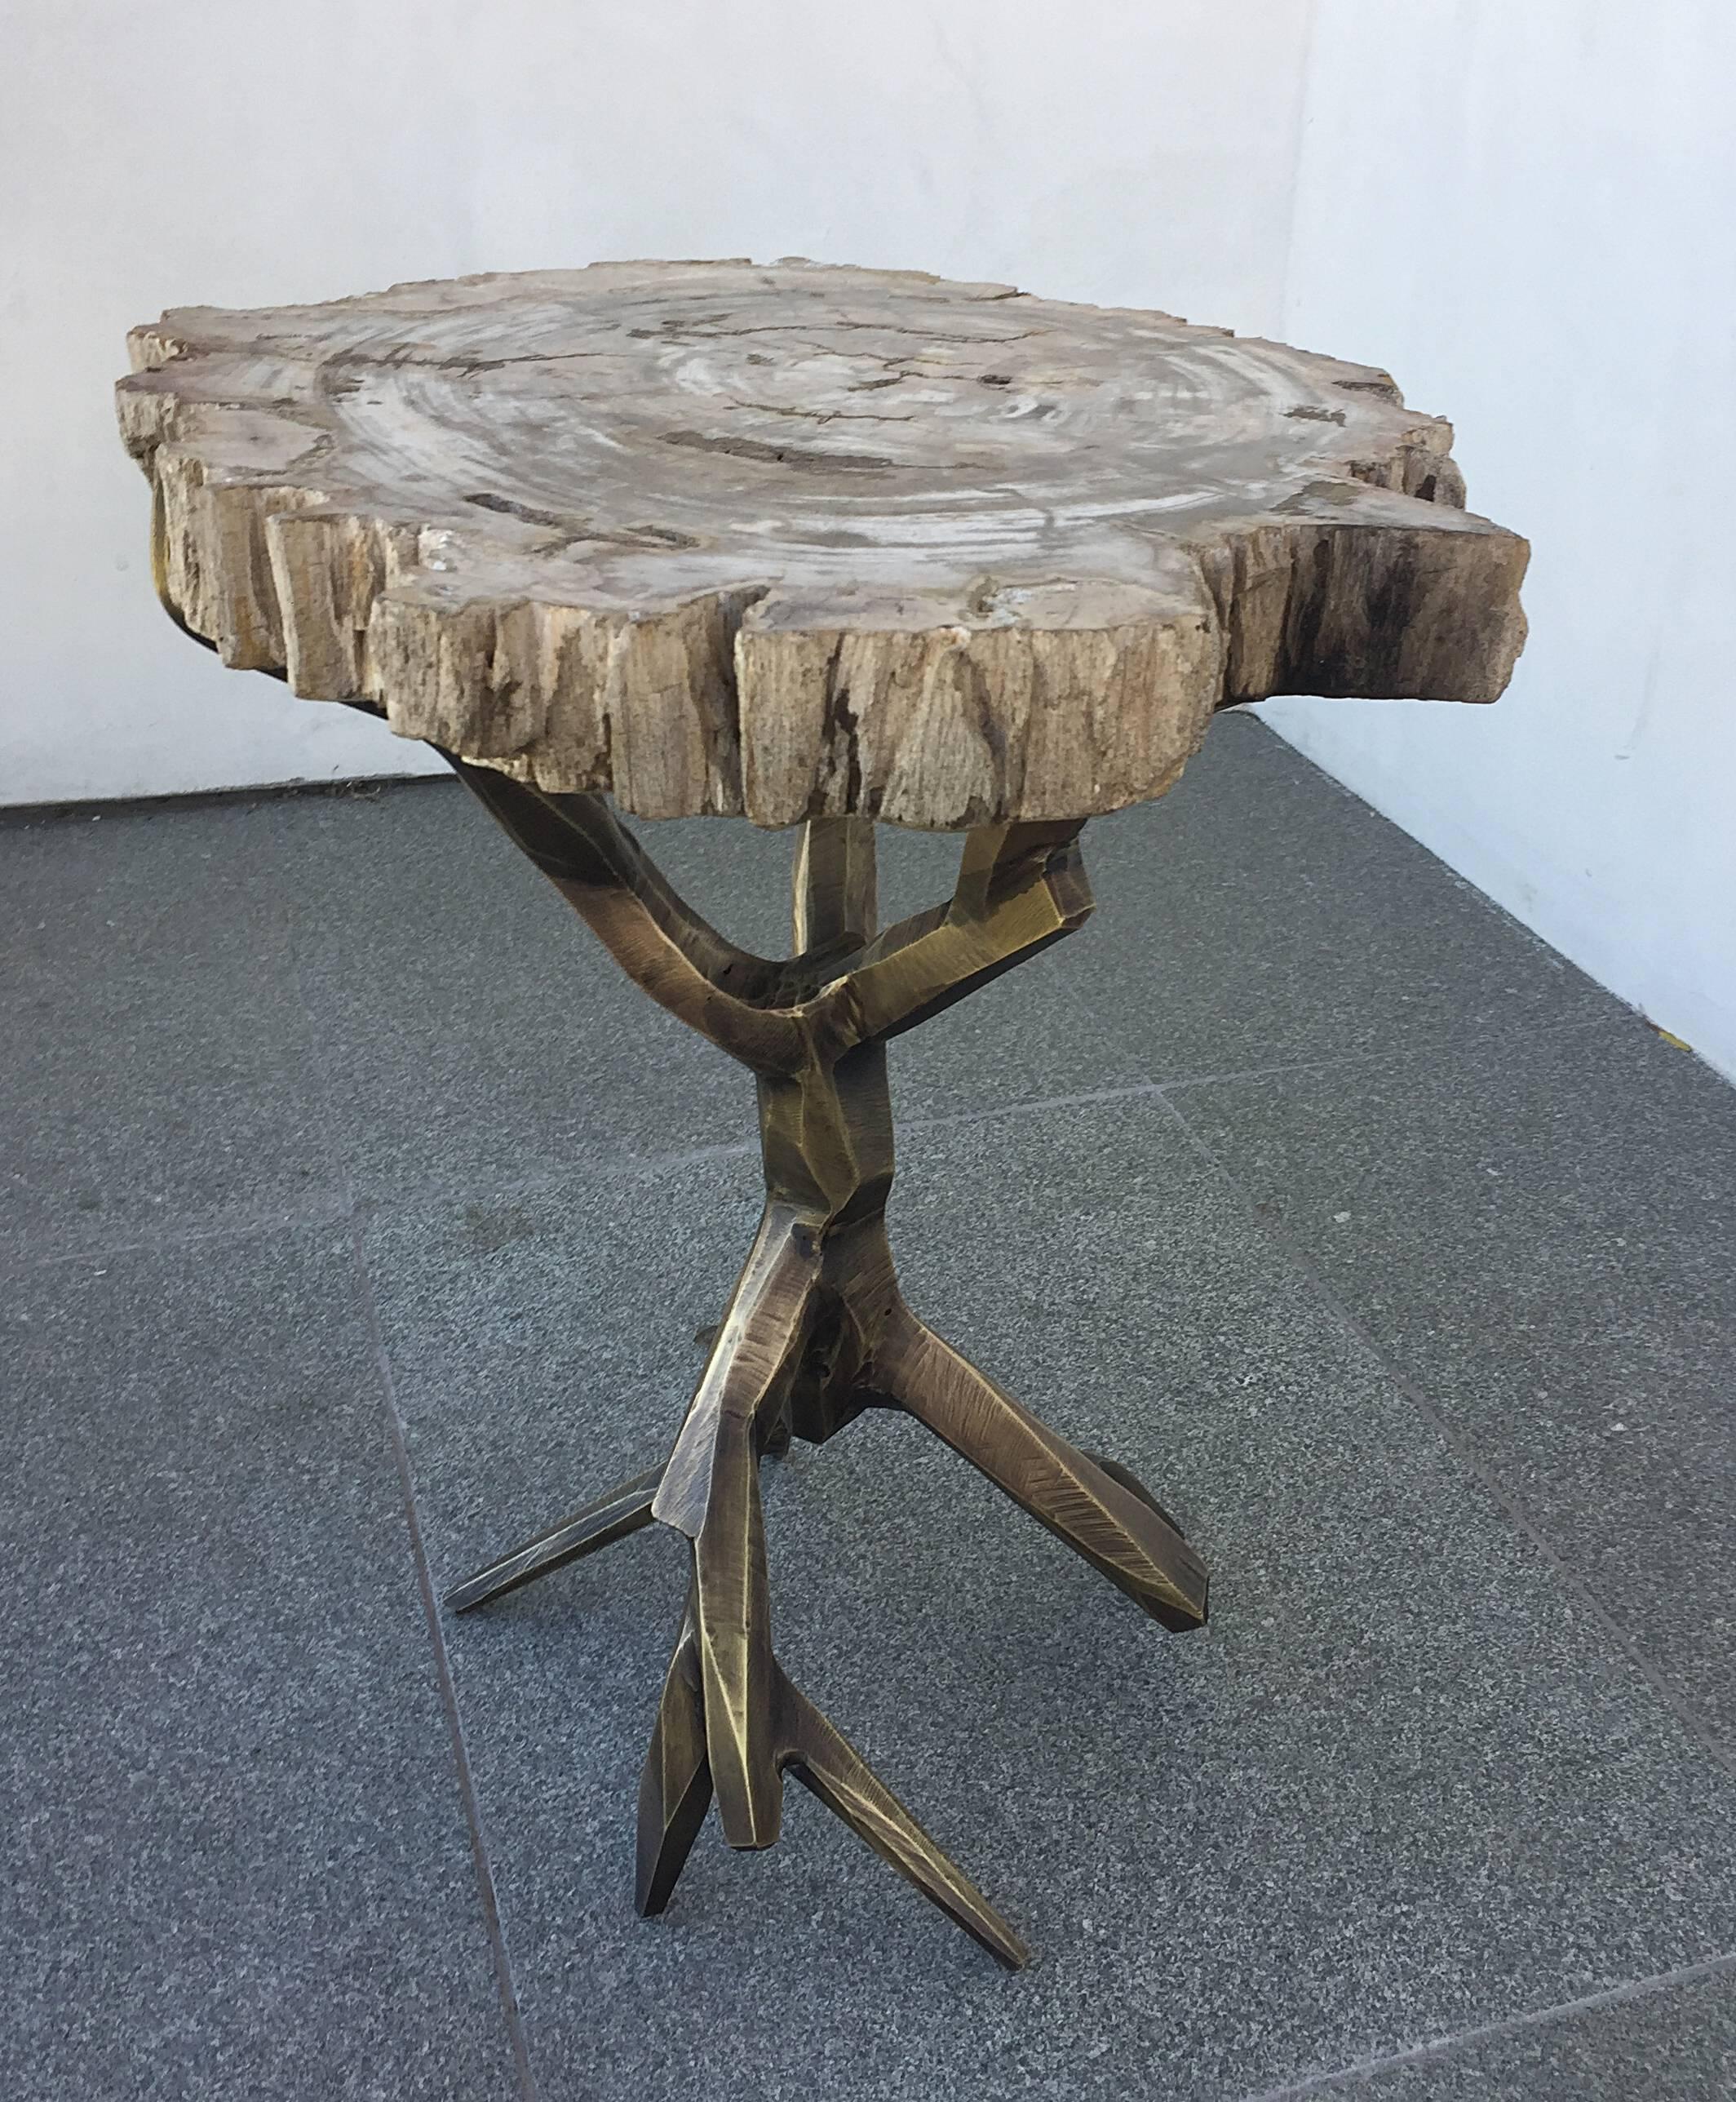 Cette magnifique table d'appoint en laiton massif avec une finition bronze est une création unique du designer Amparo Calderon Tapia, conçue exclusivement pour Cain modern.
Cette pièce fait partie de la série 